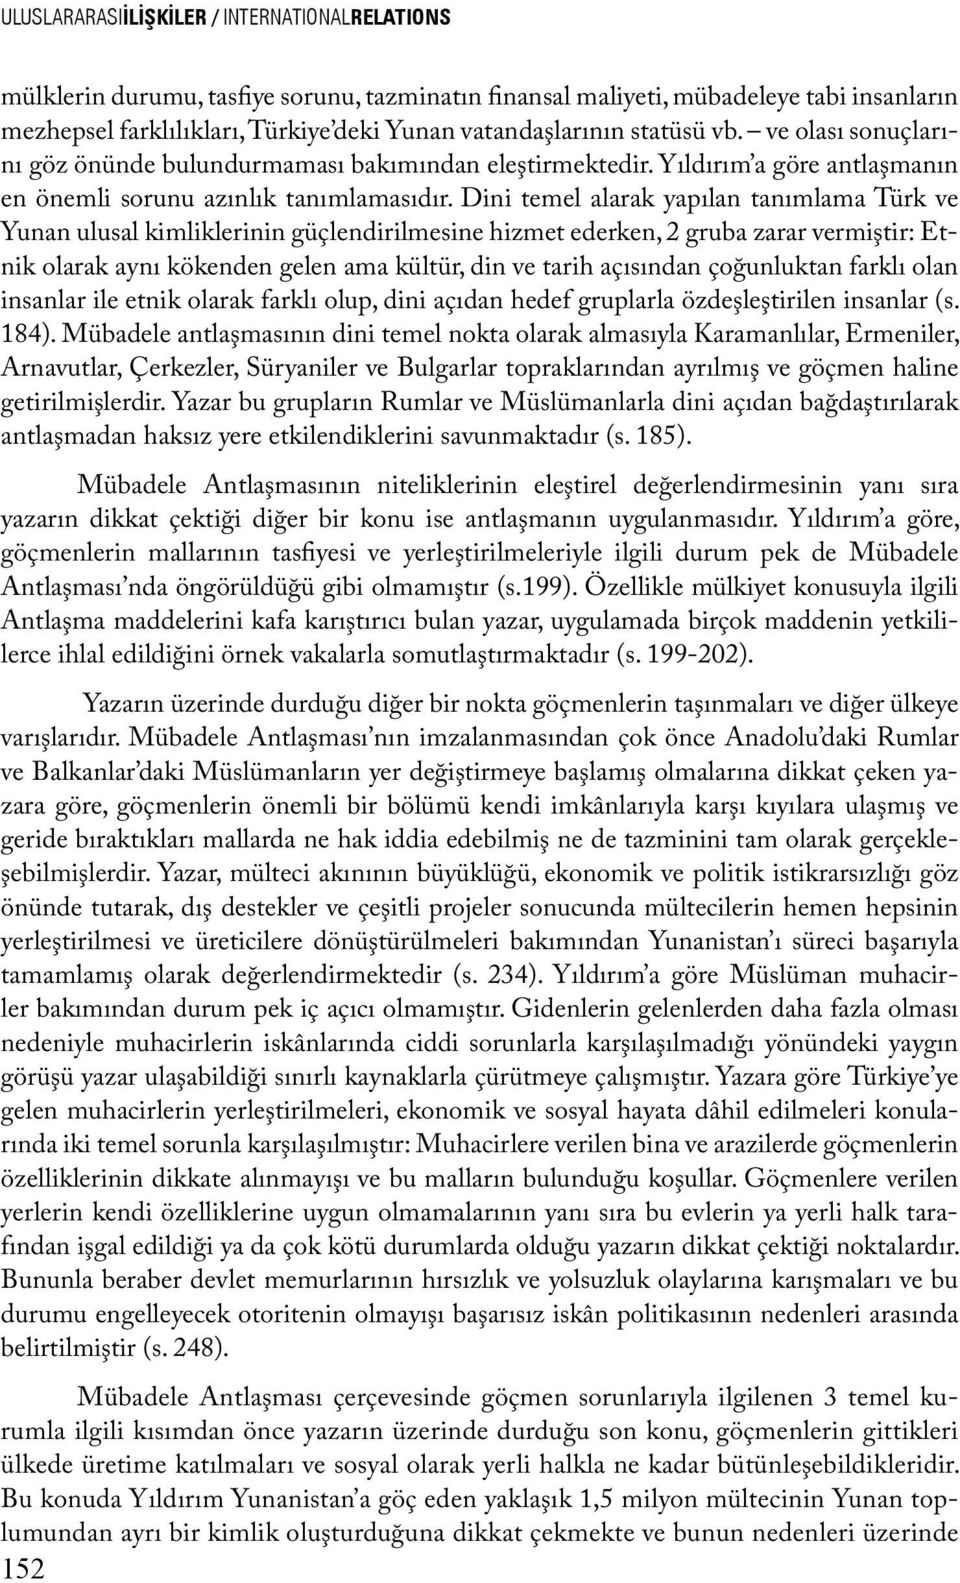 Dini temel alarak yapılan tanımlama Türk ve Yunan ulusal kimliklerinin güçlendirilmesine hizmet ederken, 2 gruba zarar vermiştir: Etnik olarak aynı kökenden gelen ama kültür, din ve tarih açısından